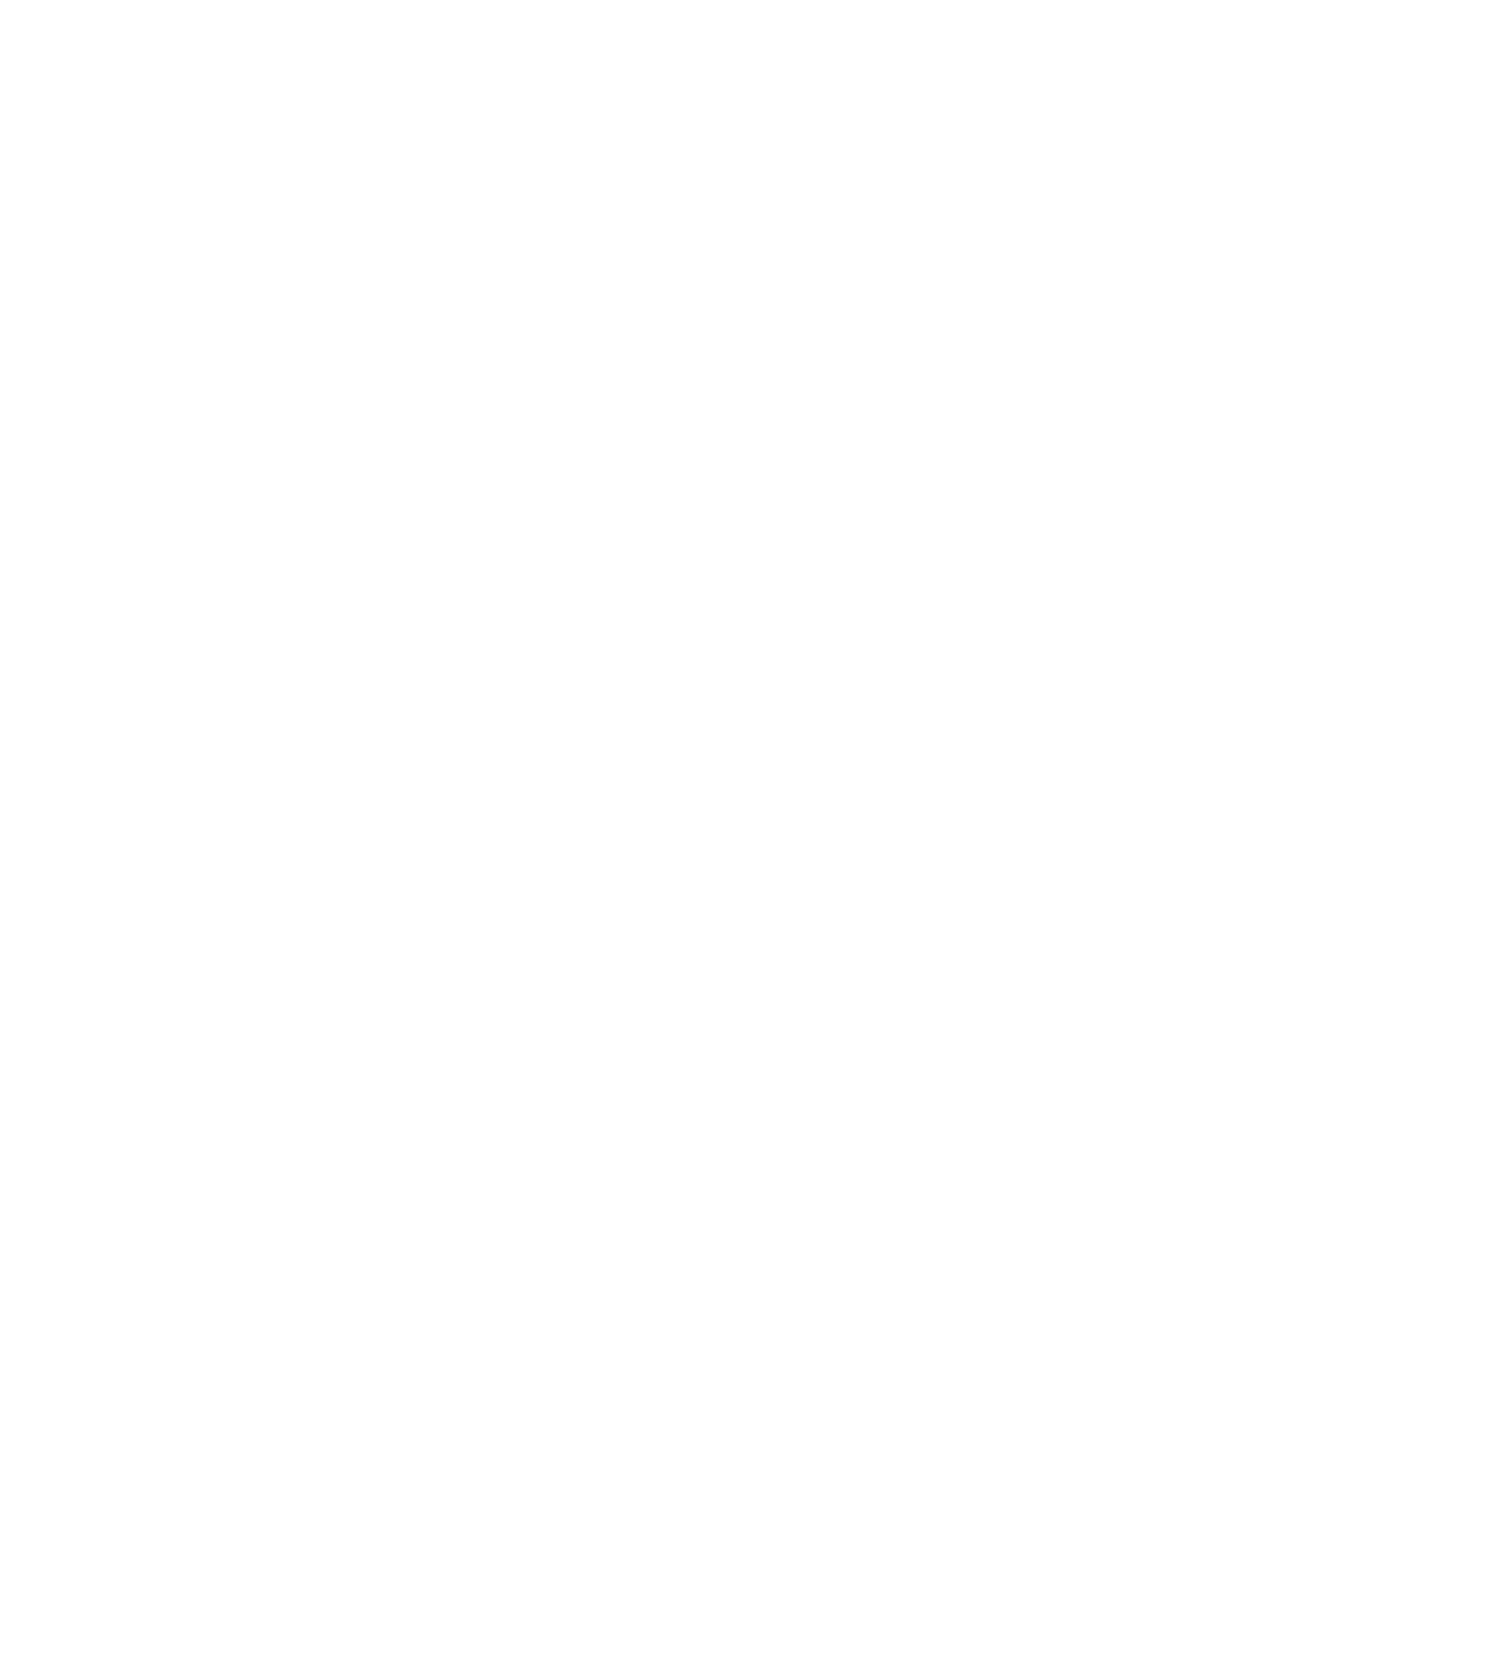 Unilever Indonesia logo large for dark backgrounds (transparent PNG)